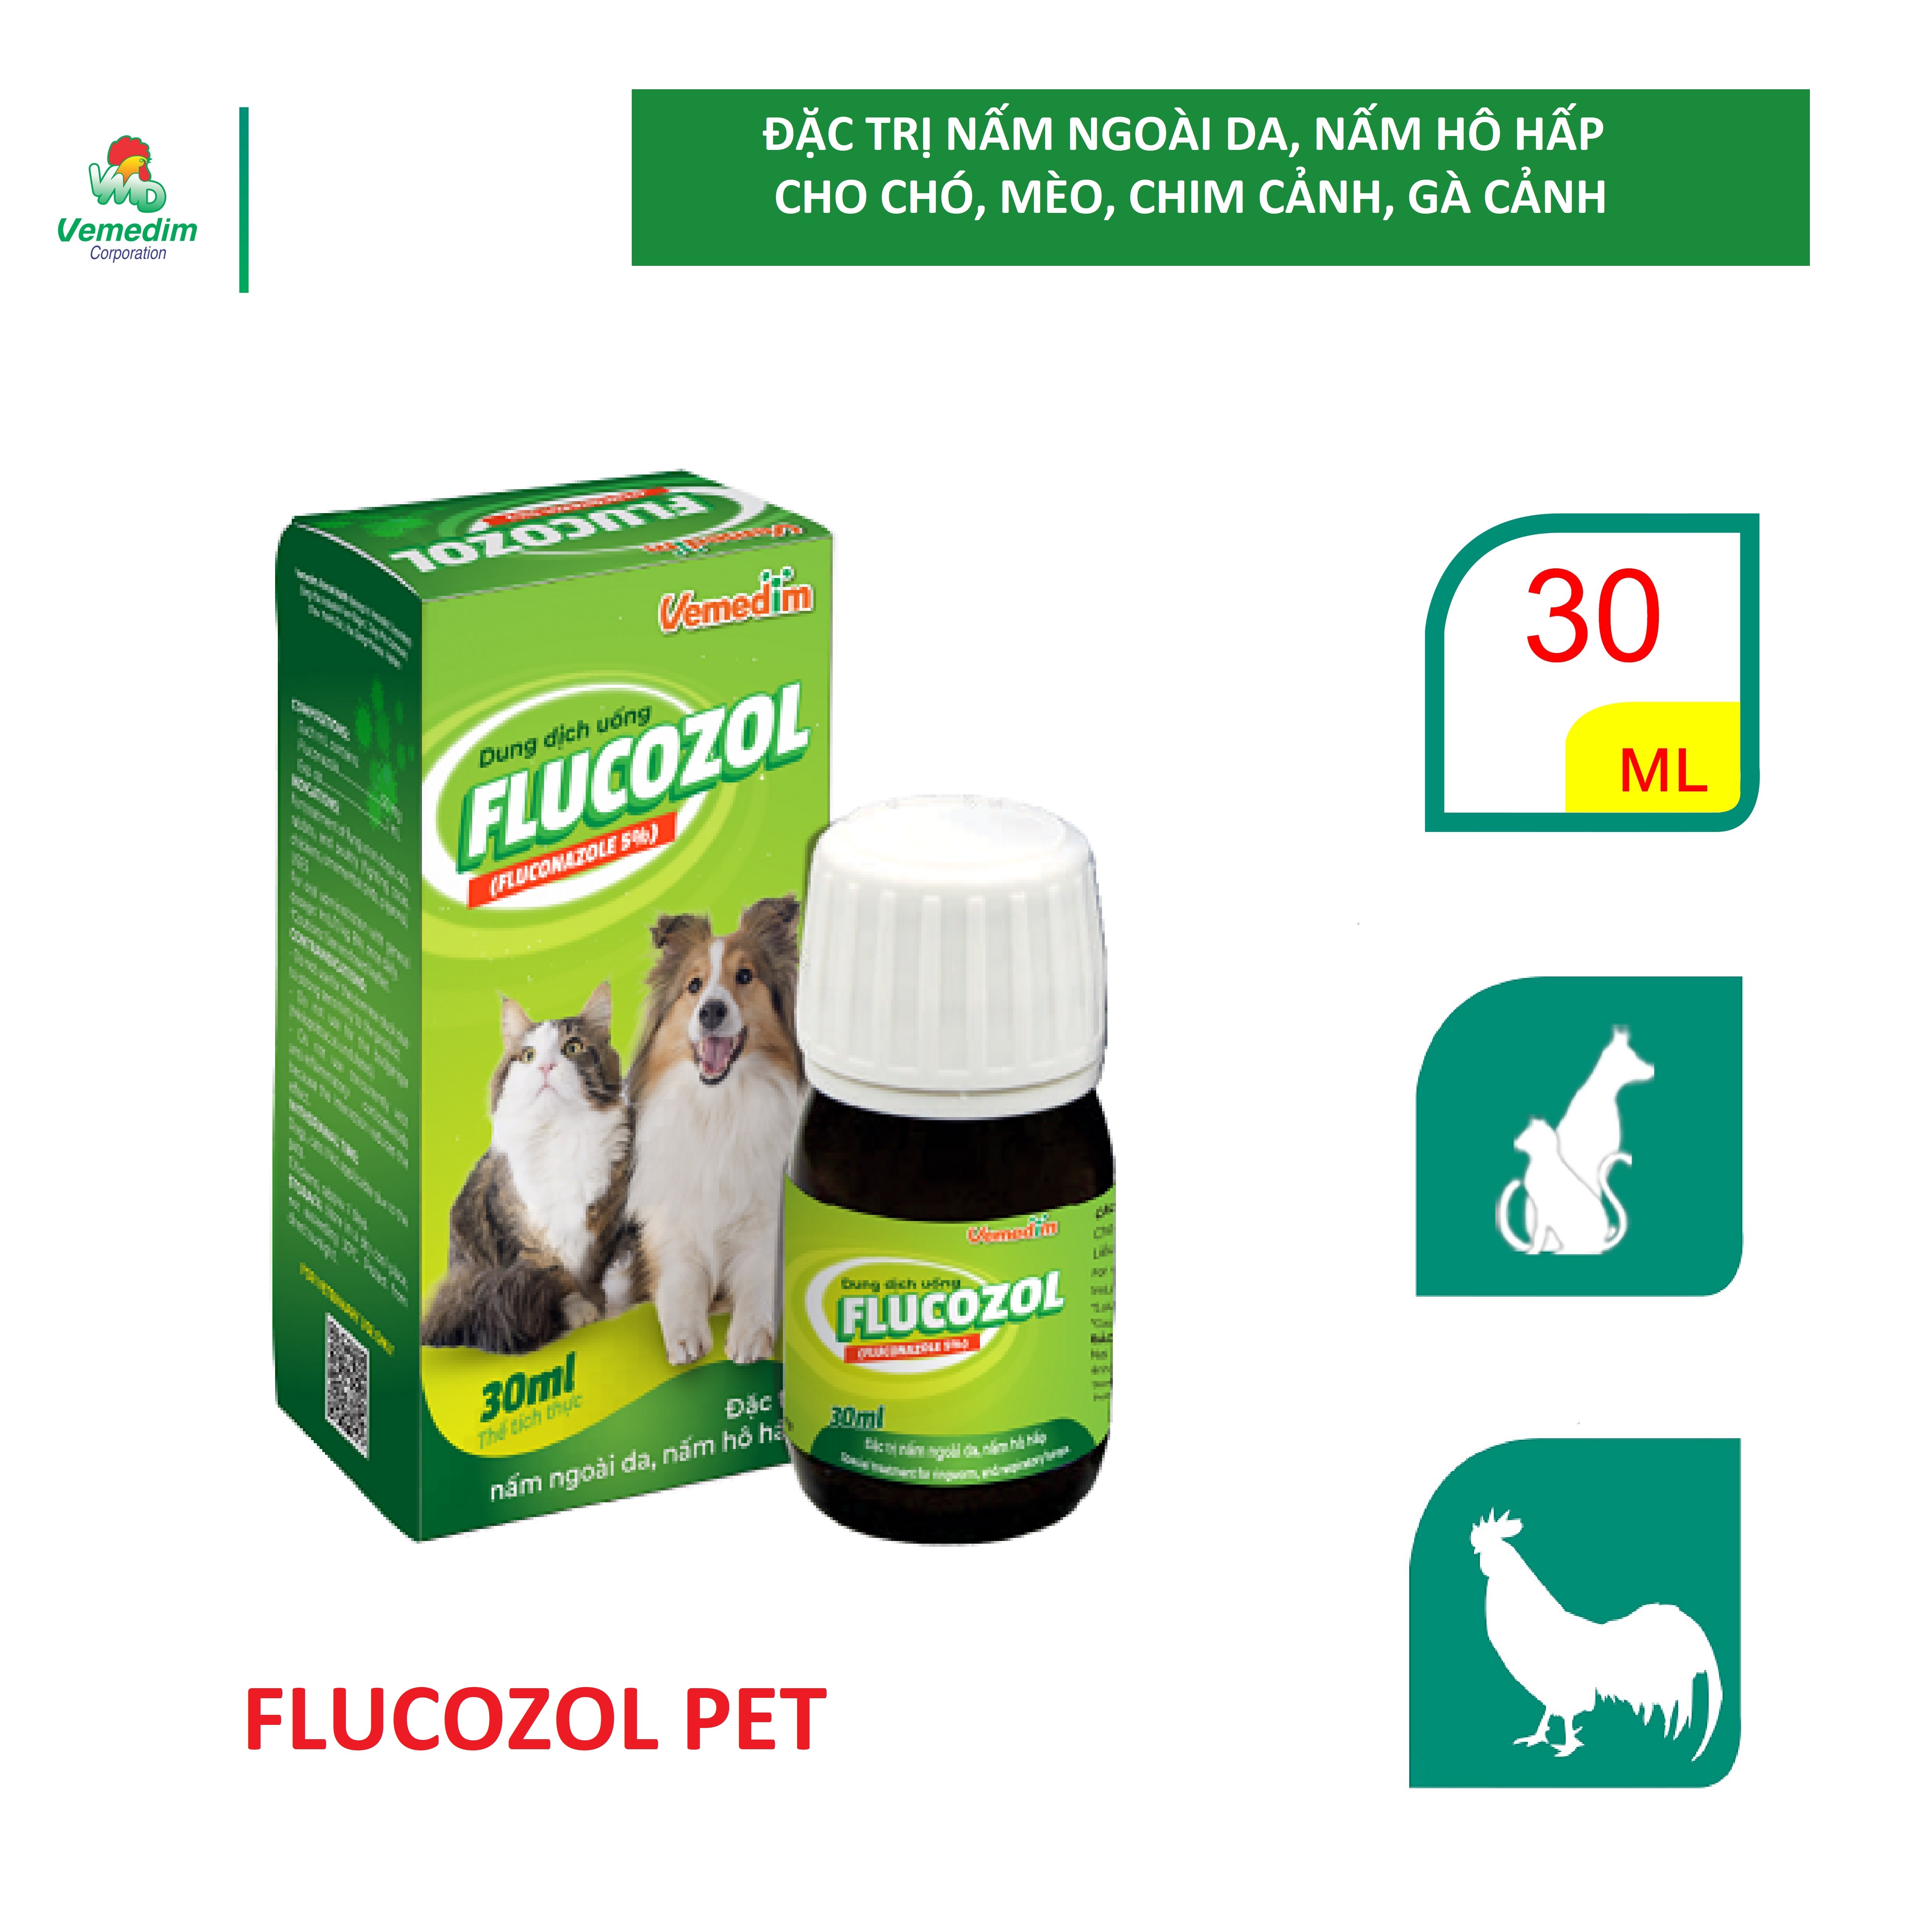 Vemedim Flucozol pet dùng cho chó, mèo, thỏ, chim cảnh, gà cảnh nấm ngoài da, nấm hô hấp, chai 30ml